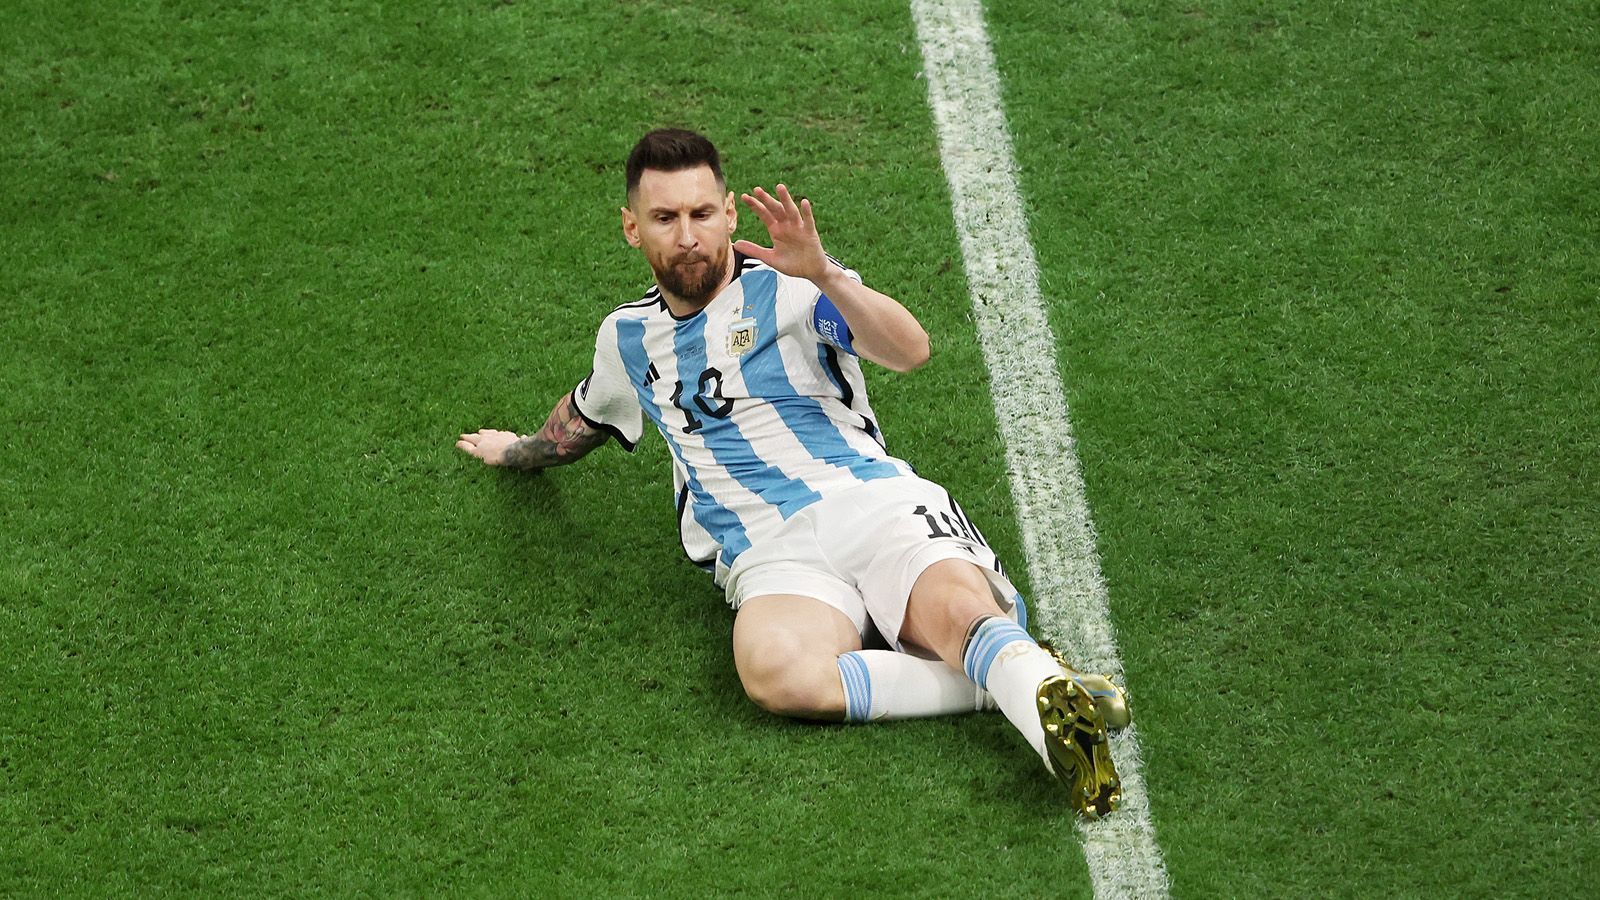 
                <strong>Lionel Messi</strong><br>
                Lenker, Denker, Vollstrecker - und jetzt auch endgültig Legende. Es ist das wohl wichtigste Spiel seiner Karriere, und er macht es zunächst auch zu seinem Spiel. Bestätigt im Finale einmal mehr, dass er rechtzeitig zur WM in der Form seines Lebens ist. Geht beim Foulelfmeter zur Führung voran und verwandelt eiskalt. Später scheint es, als tauche er zum ungünstigsten Moment mal wieder ab. Doch erst bringt er Argentinien wieder in Führung, um dann im Elfmeterschießen erneut Präsenz zu zeigen. Trotz zwischenzeitlicher Schaffenspausen ran-Note: 1
              